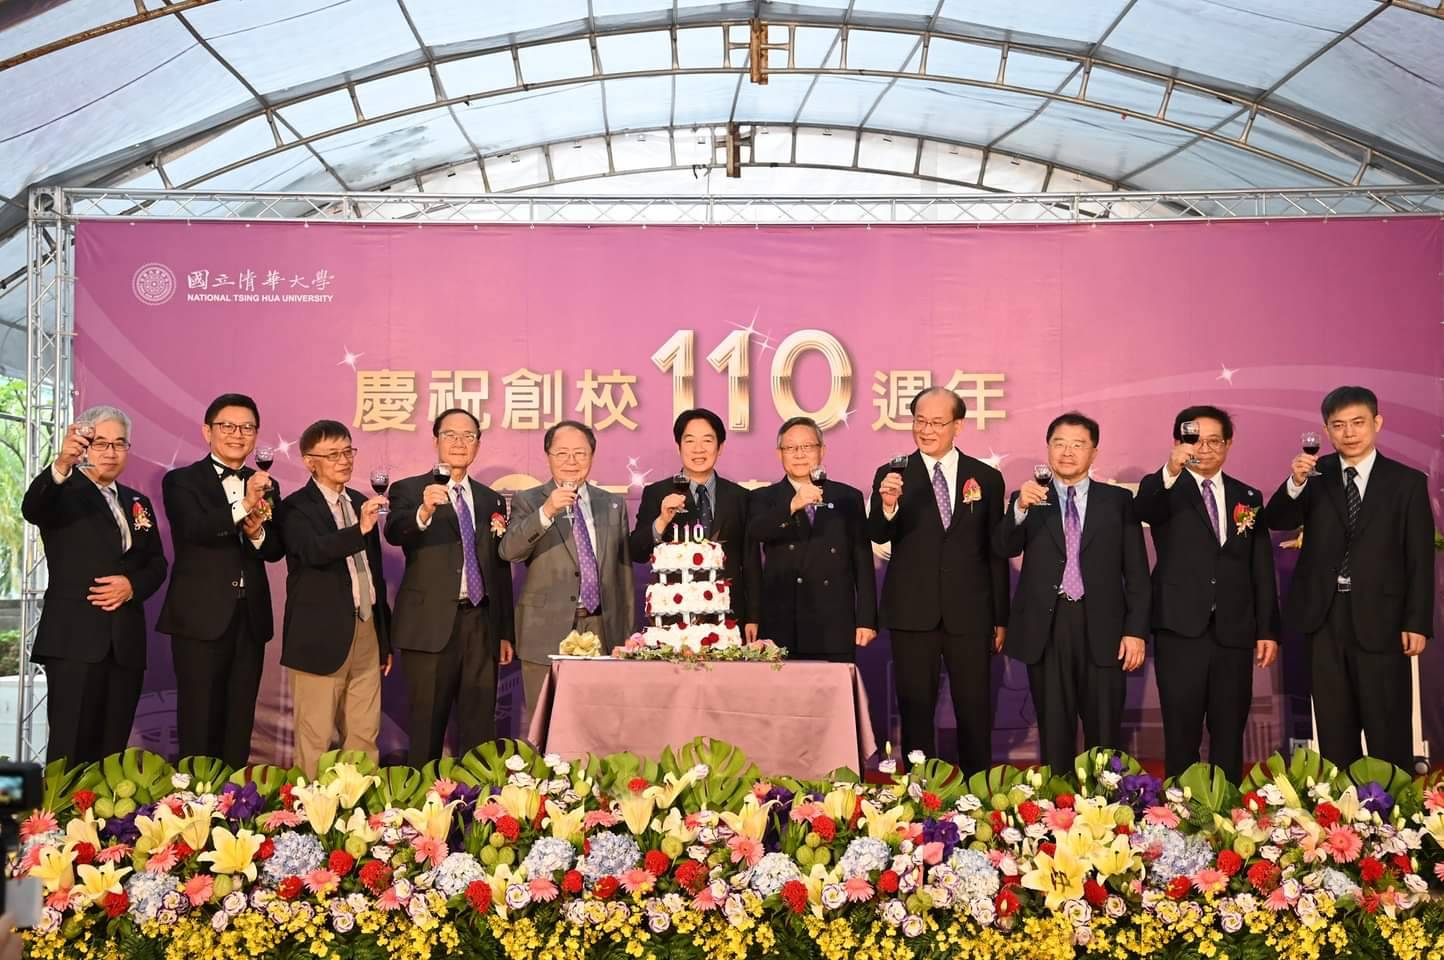 
	賴清德副總統、新竹縣長楊文科等各界人士受邀出席清華大學創校110周年暨在台建校65周年校慶活動。
